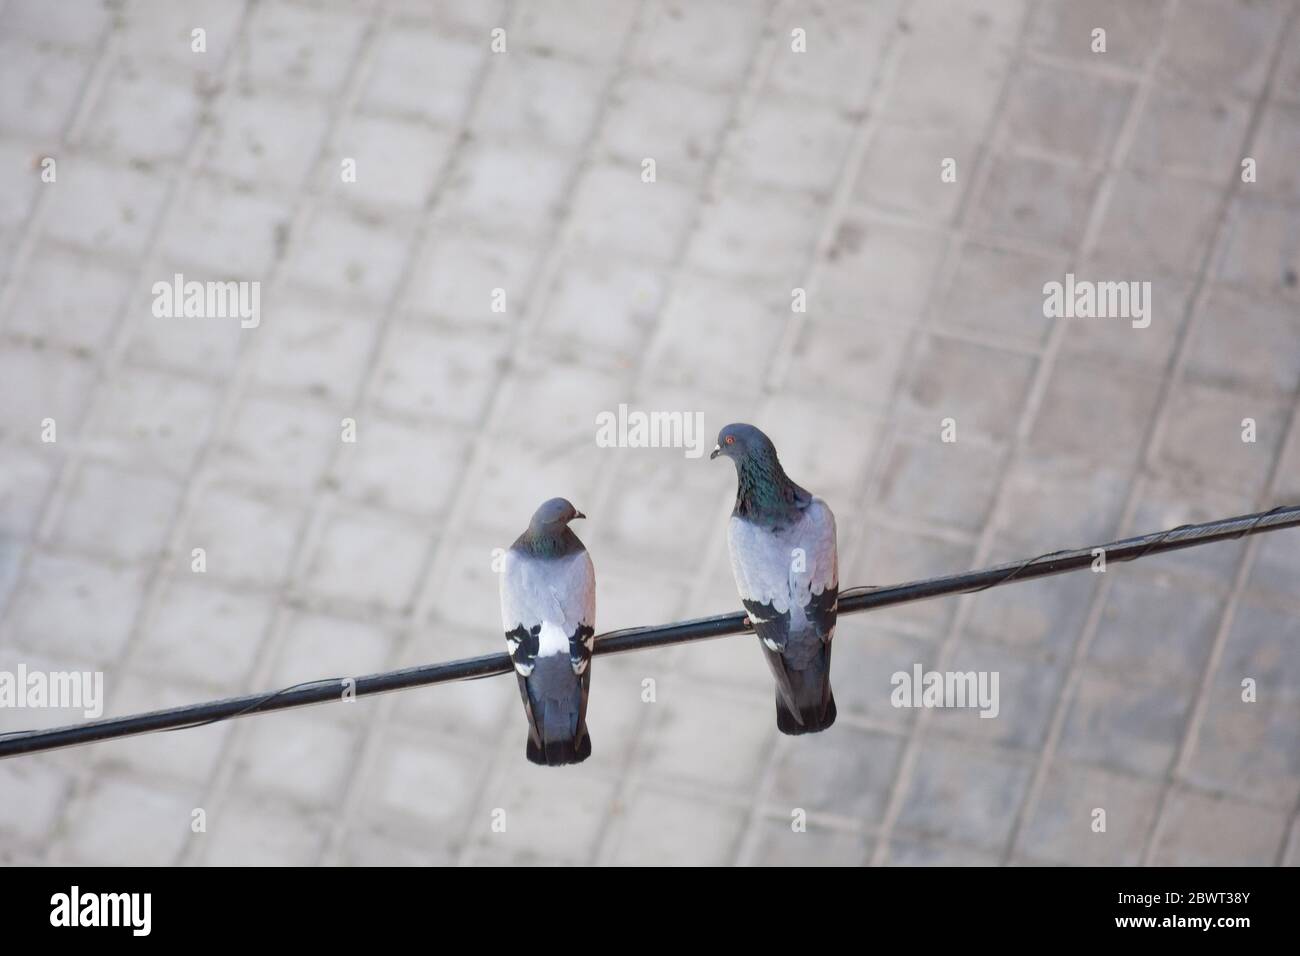 Concept d'amour : vue aérienne de deux pigeons se regardant l'un sur l'autre perchés sur un câble électrique dans la rue avec un arrière-plan flou Banque D'Images